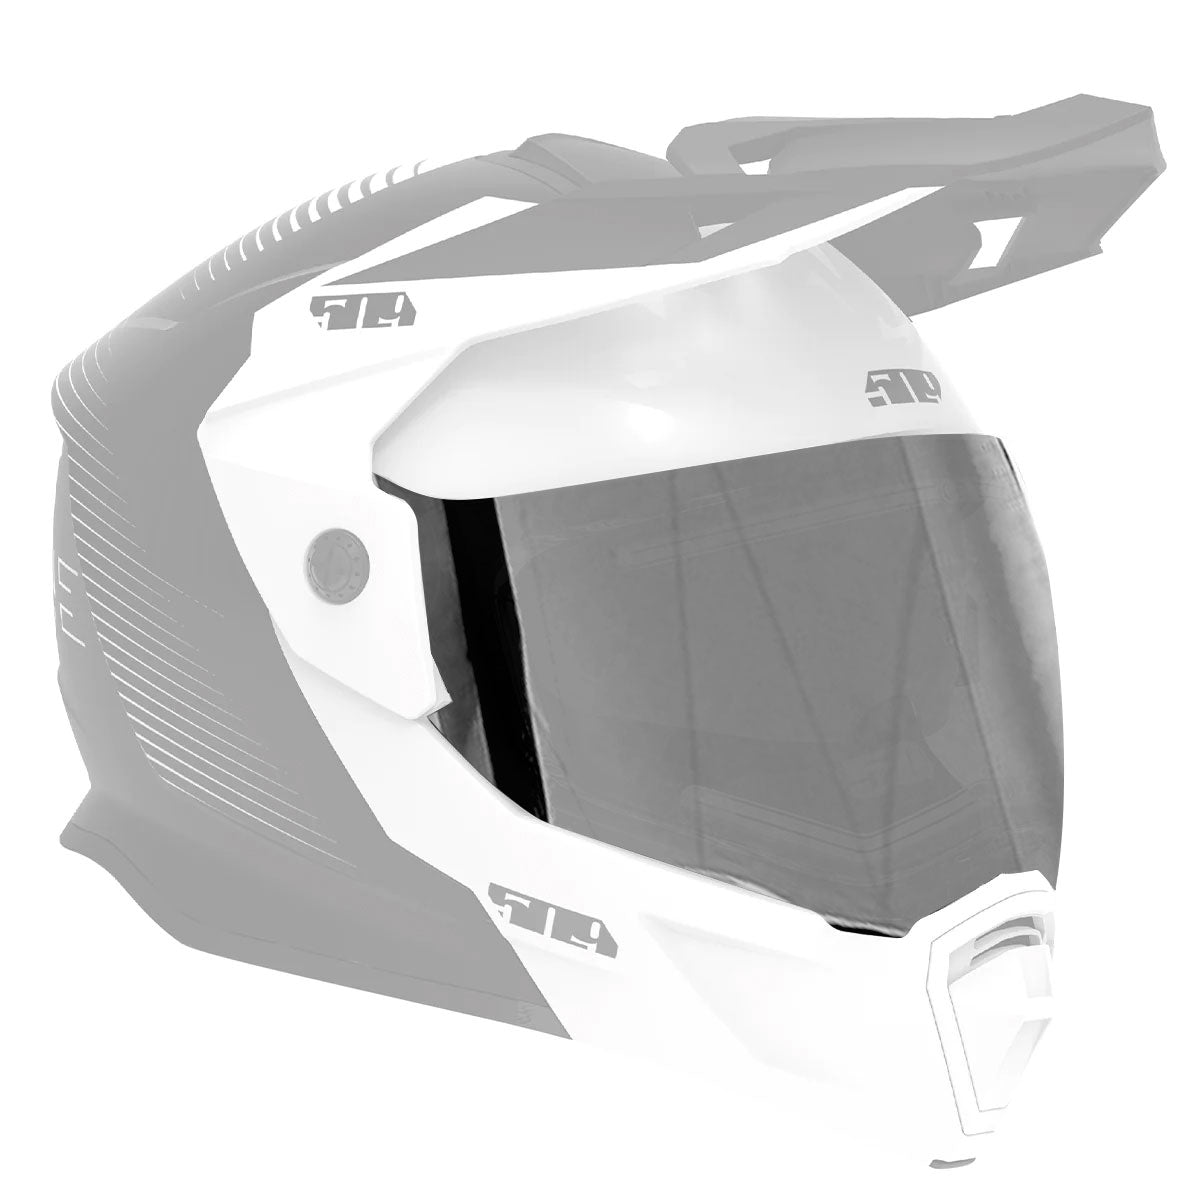 Ignite Dual Shield for Delta R4 Helmets